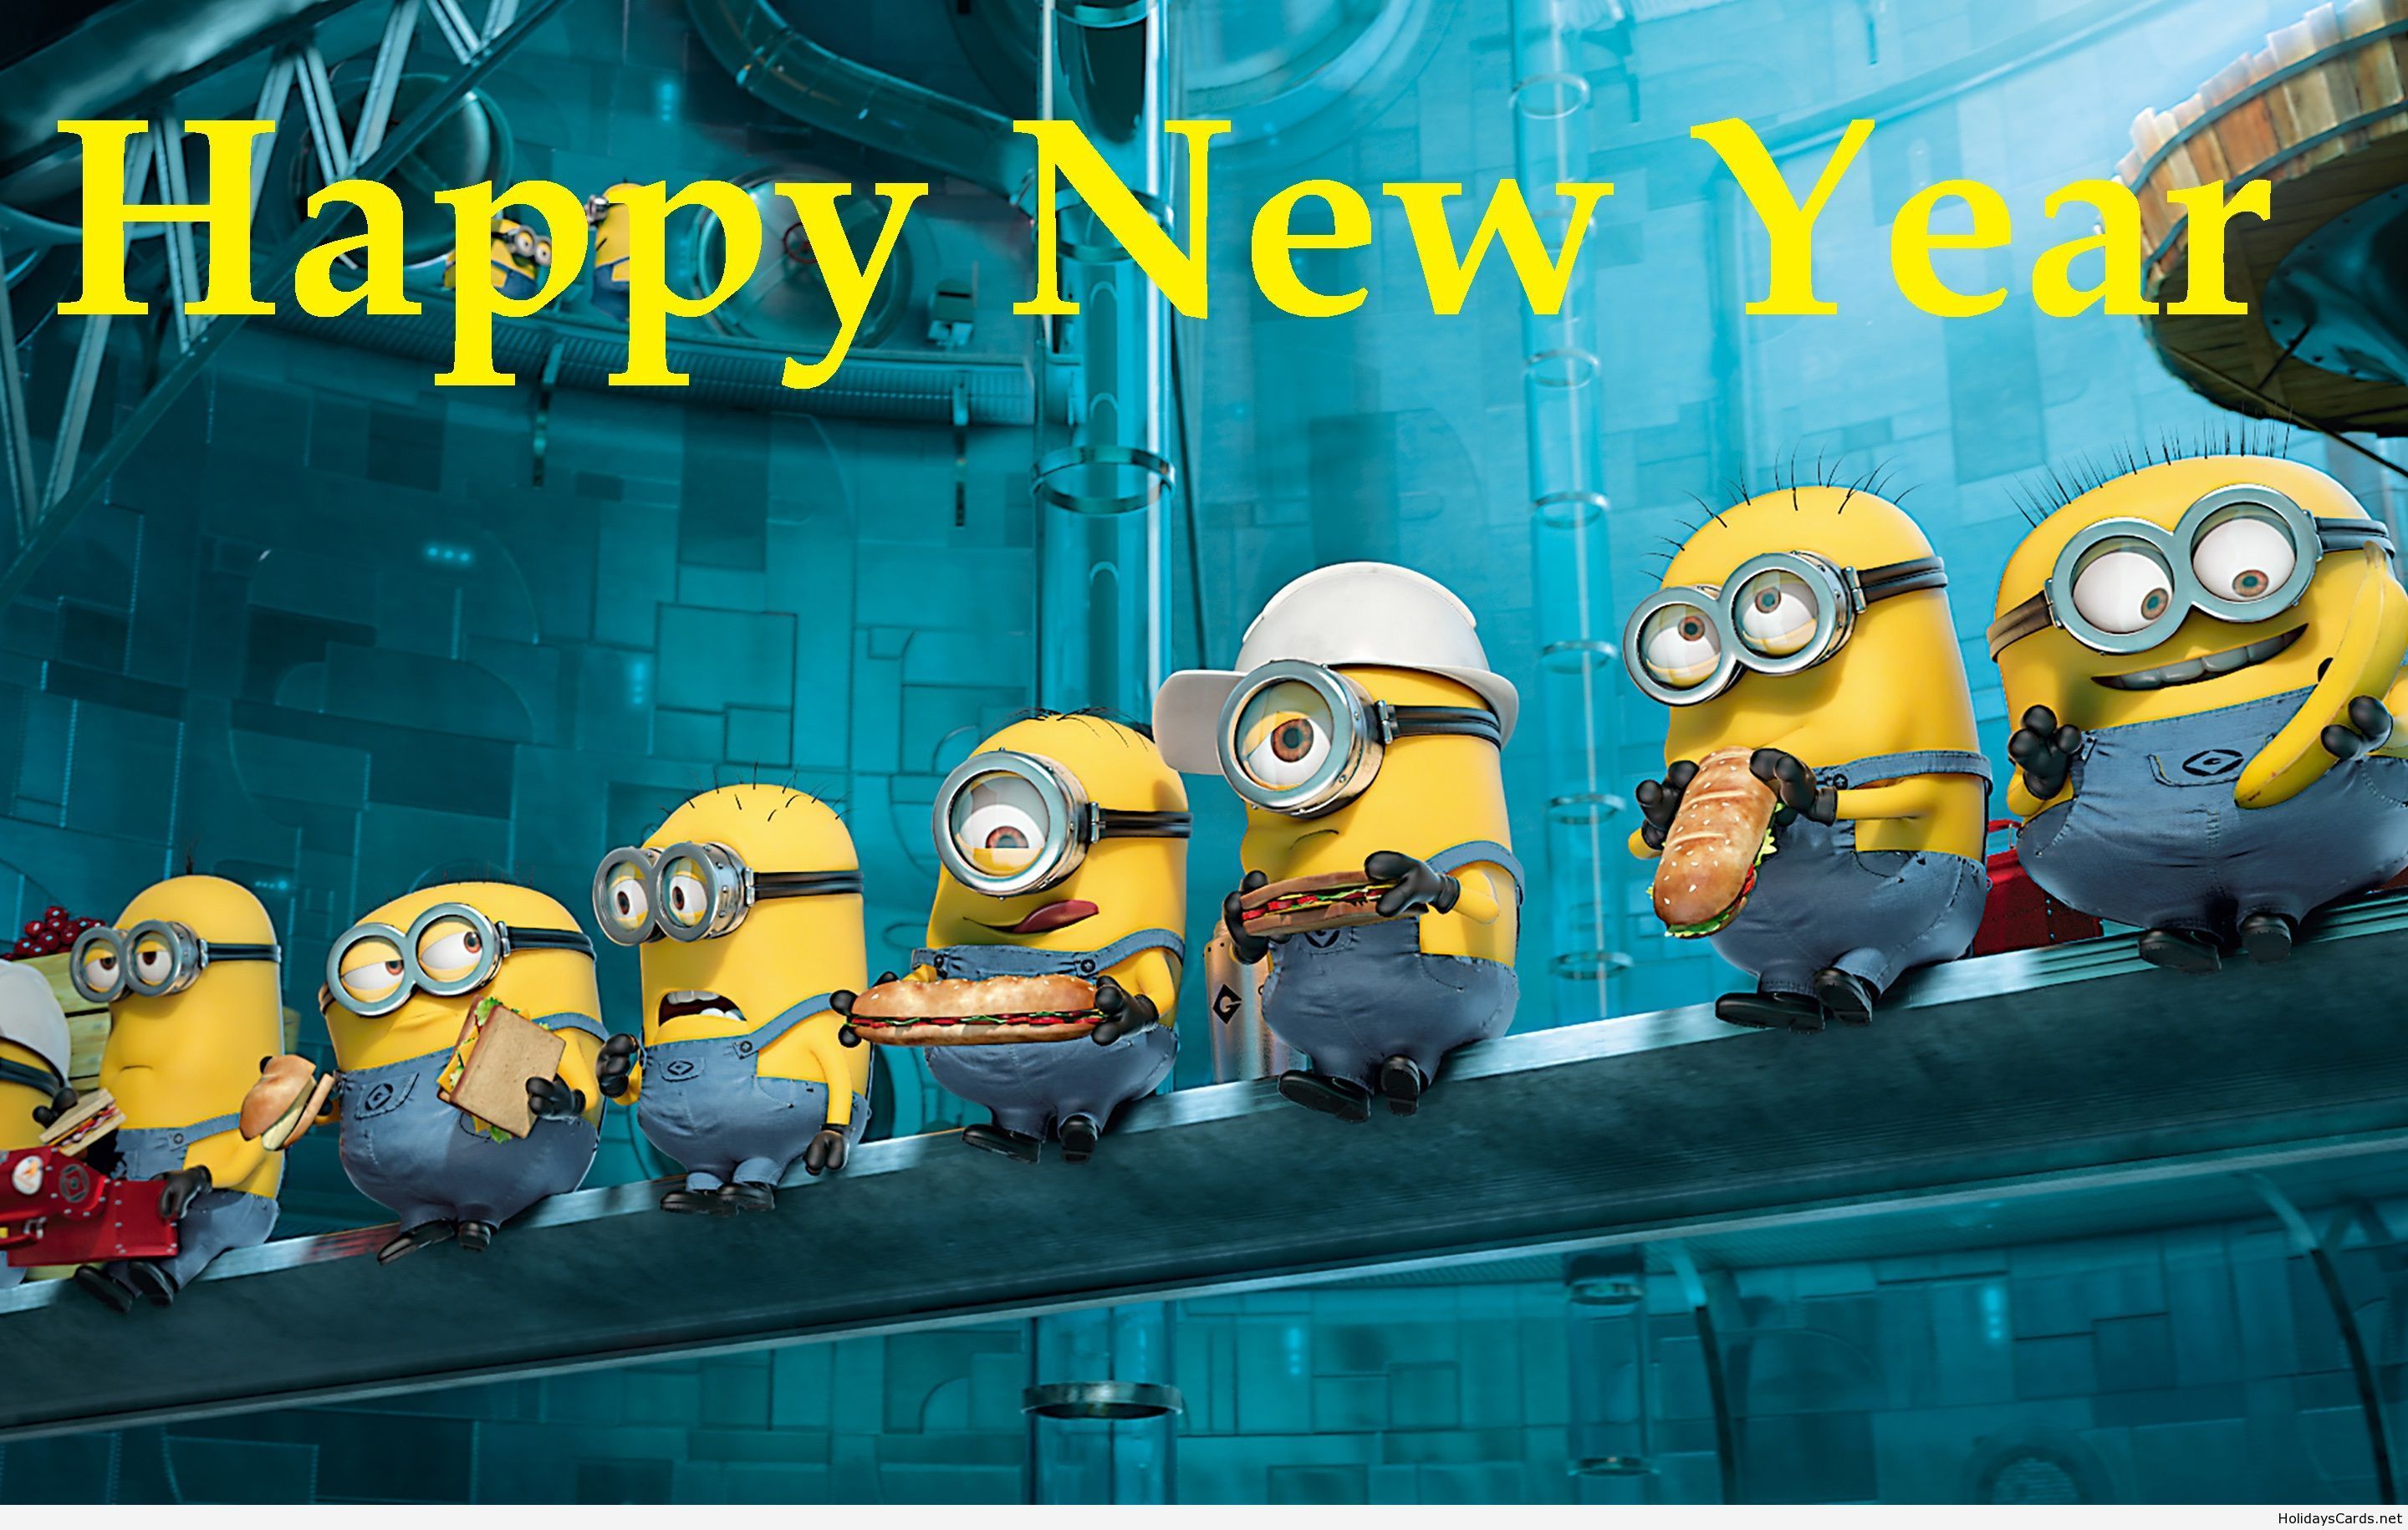 Happy New Year Minions Picture. Minions wallpaper, Despicable me 2 minions, Minion movie